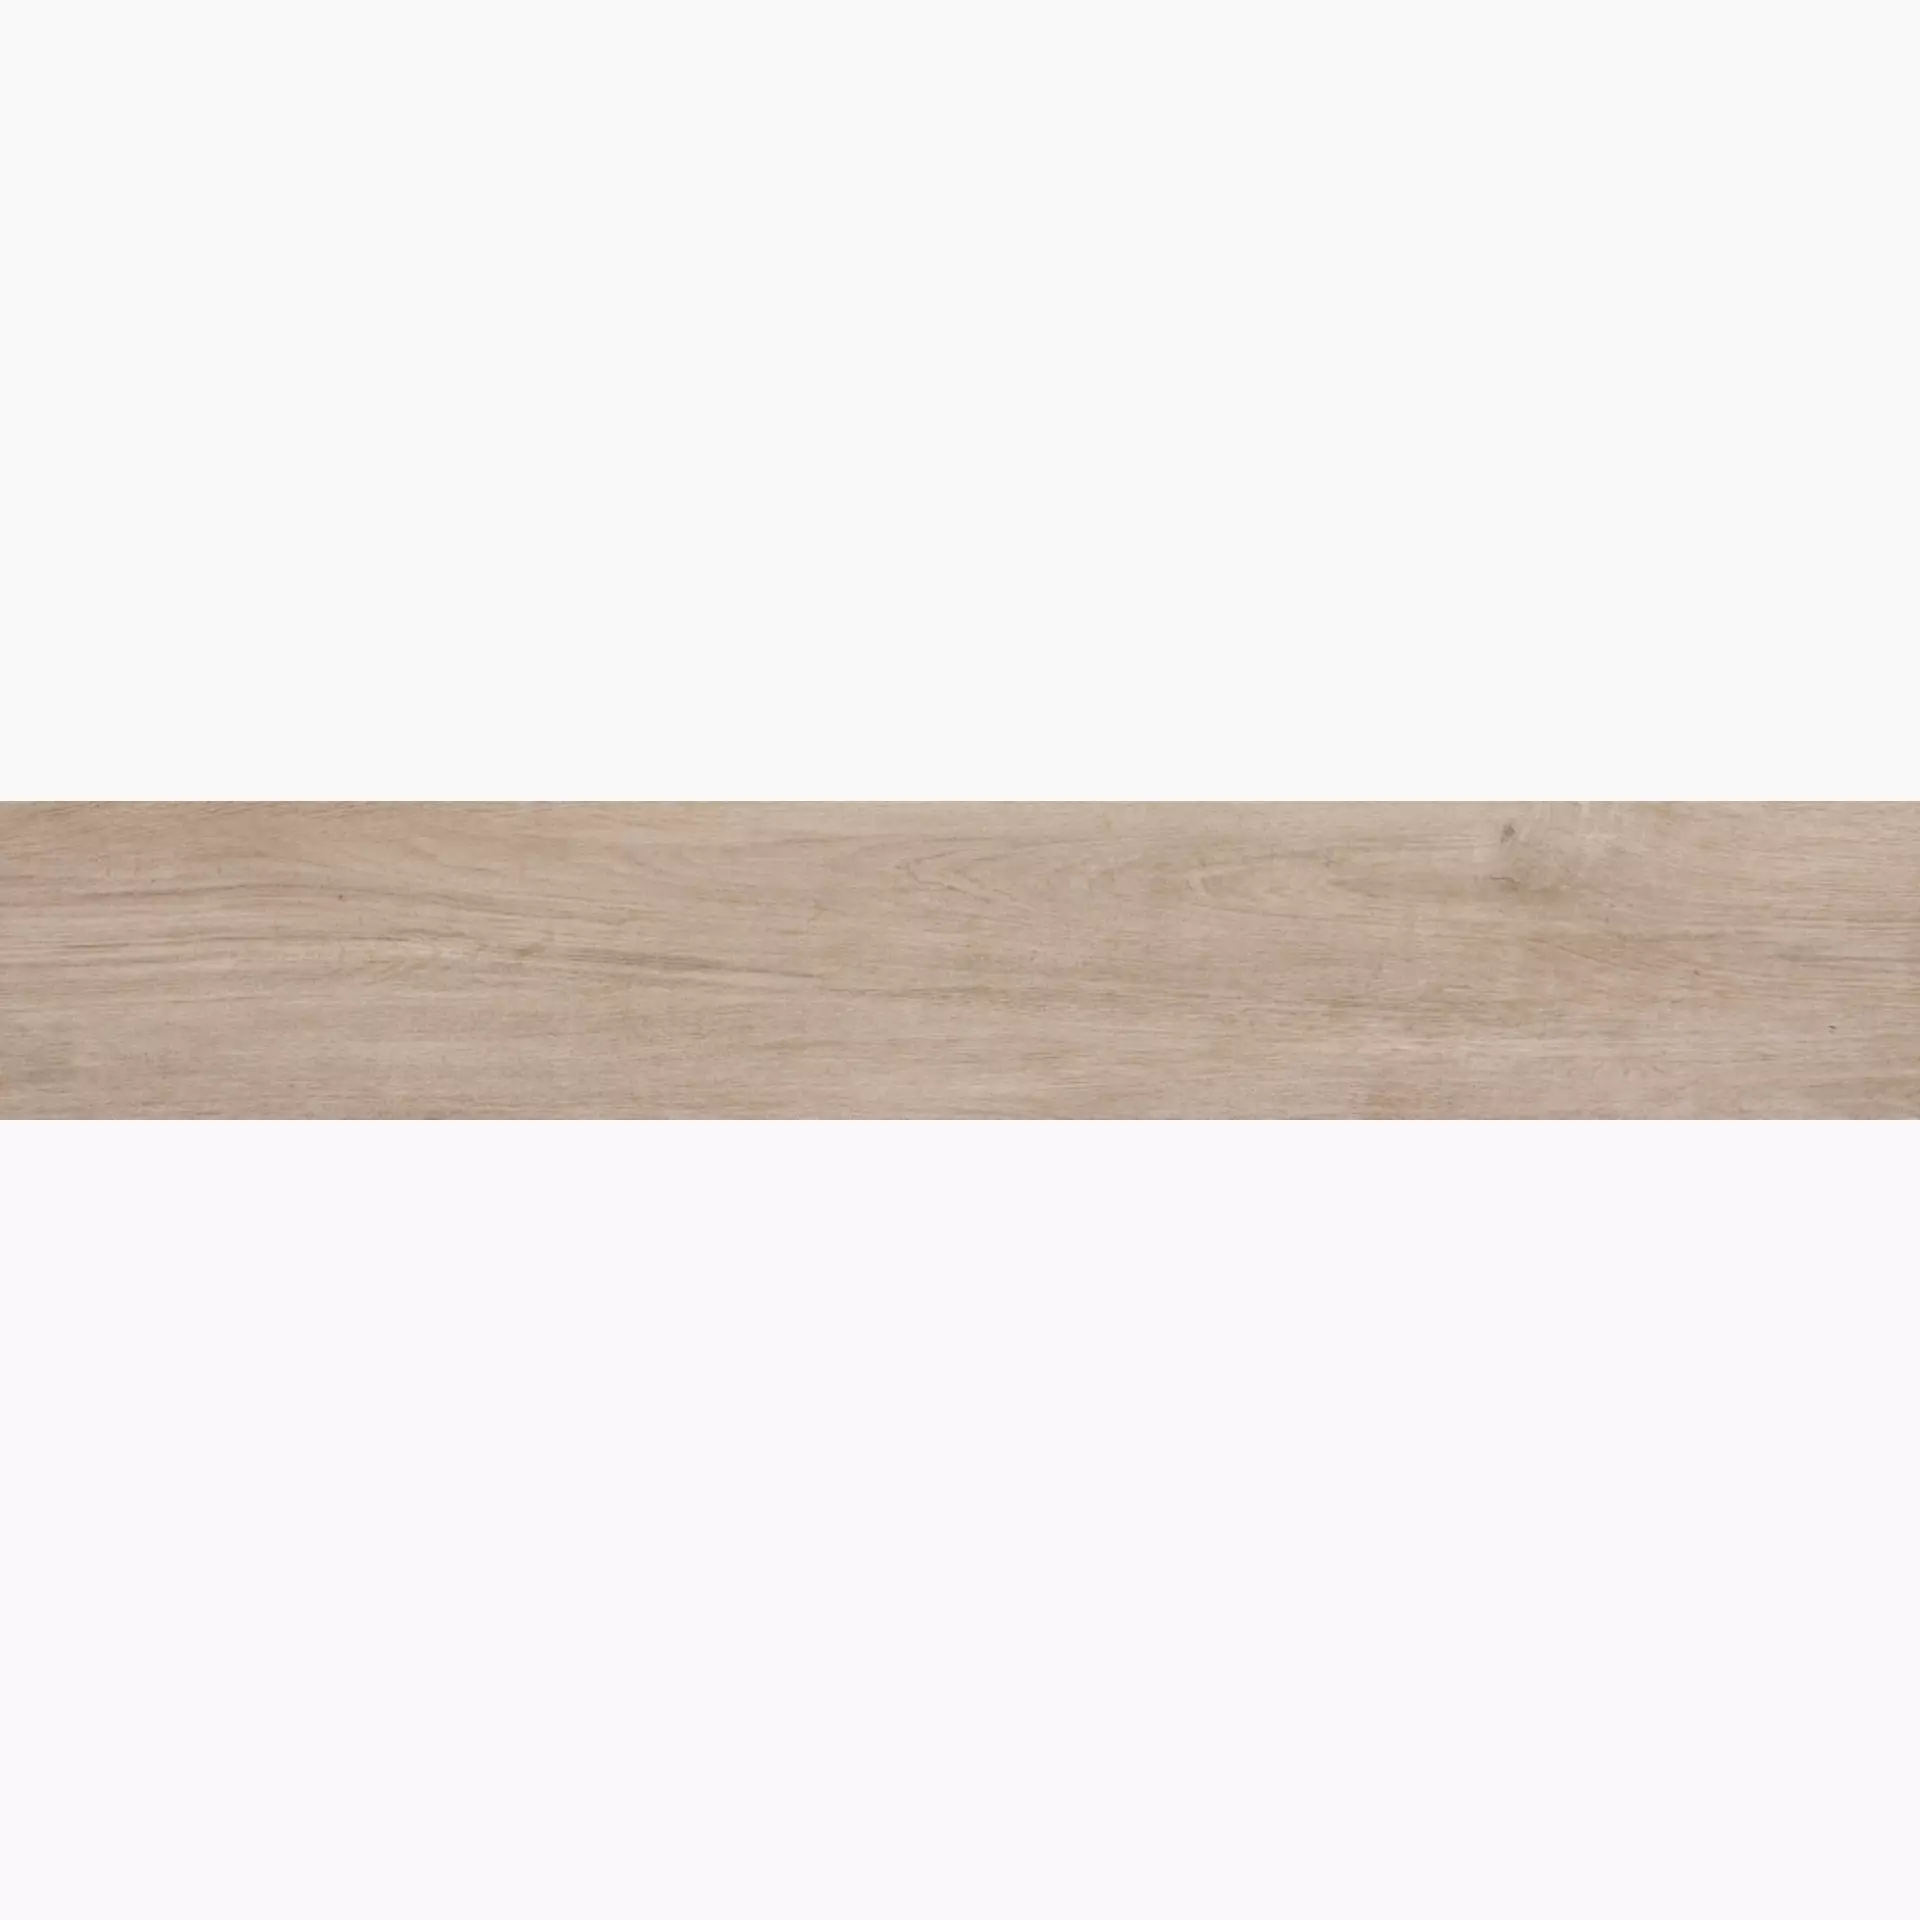 Ragno Woodliving Rovere Tortora Naturale – Matt R40D 20x120cm rektifiziert 9,5mm